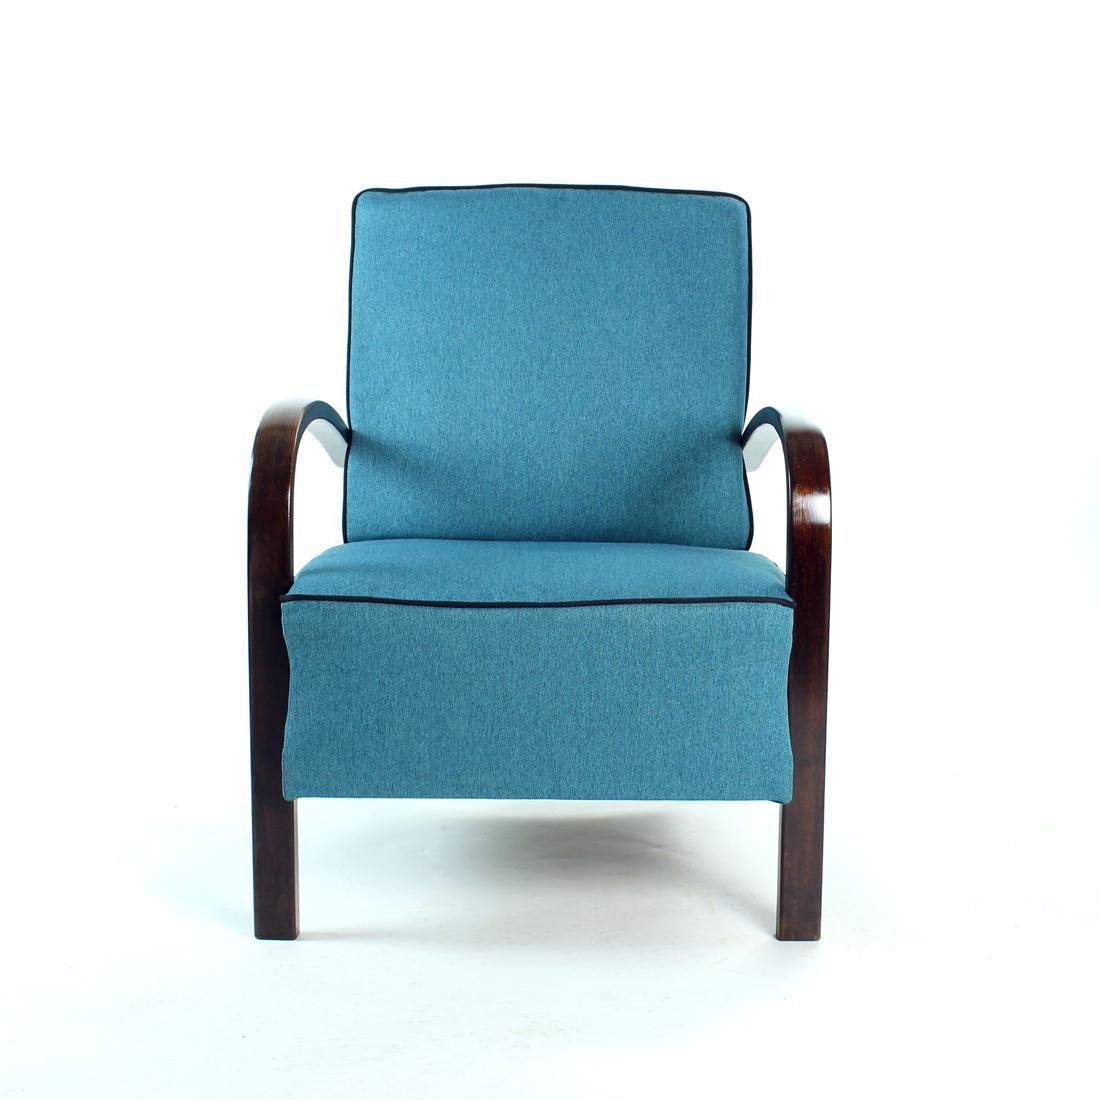 Dies ist ein erstaunlicher Sessel. Vollständig restauriert in einem schönen, trendigen Look. Der Sessel wurde in den 1940er Jahren von der Firma Thonet hergestellt, das originale Label ist noch vorhanden. Der Sessel war in einem sehr schlechten